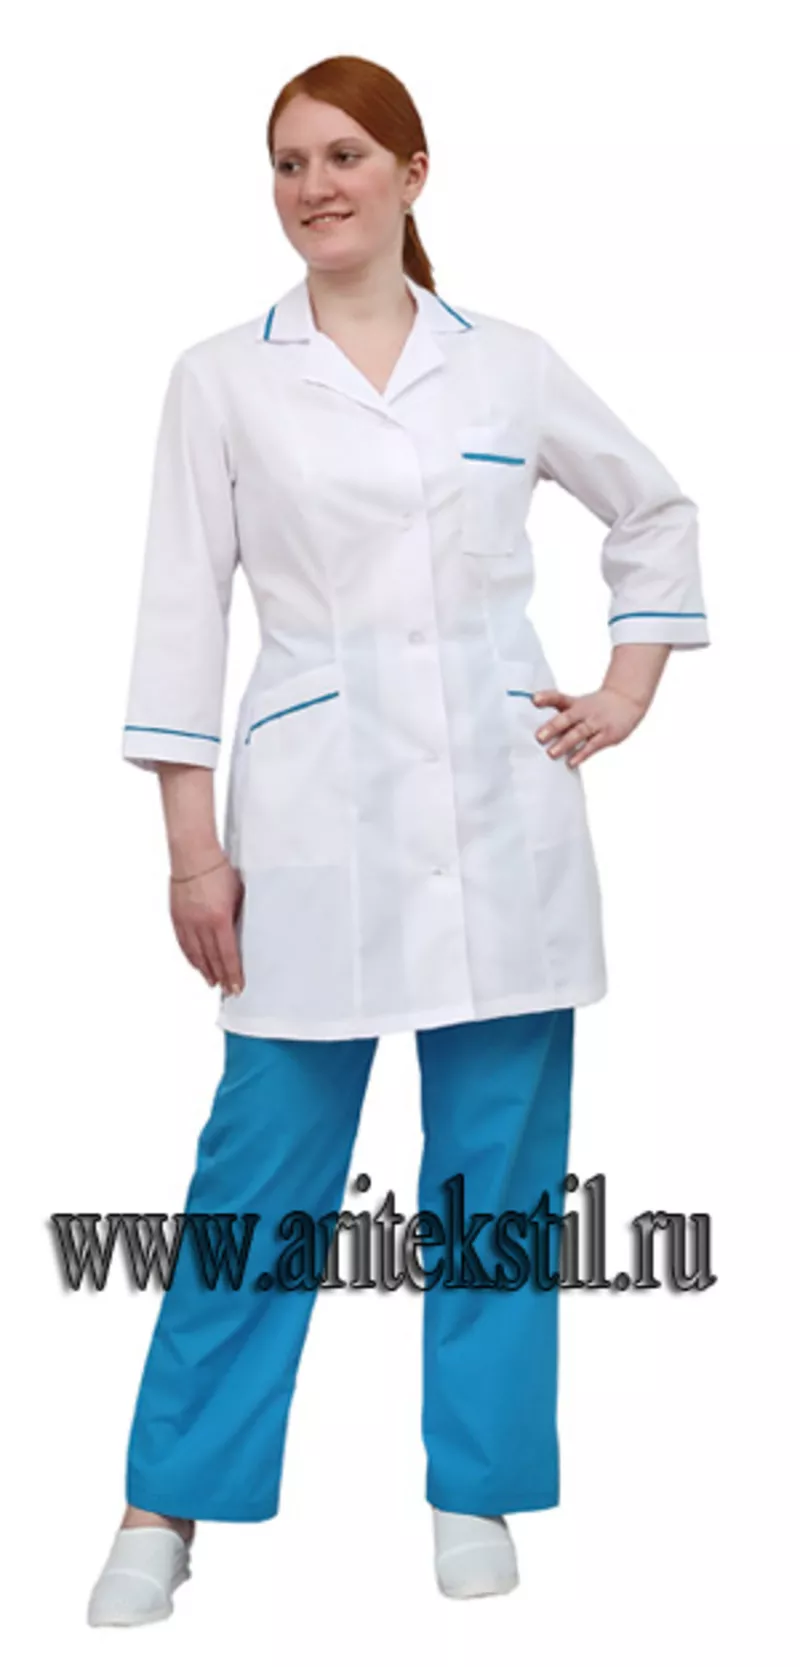 униформа для медицинских учреждений,  Медицинские халаты,  Медицинские к